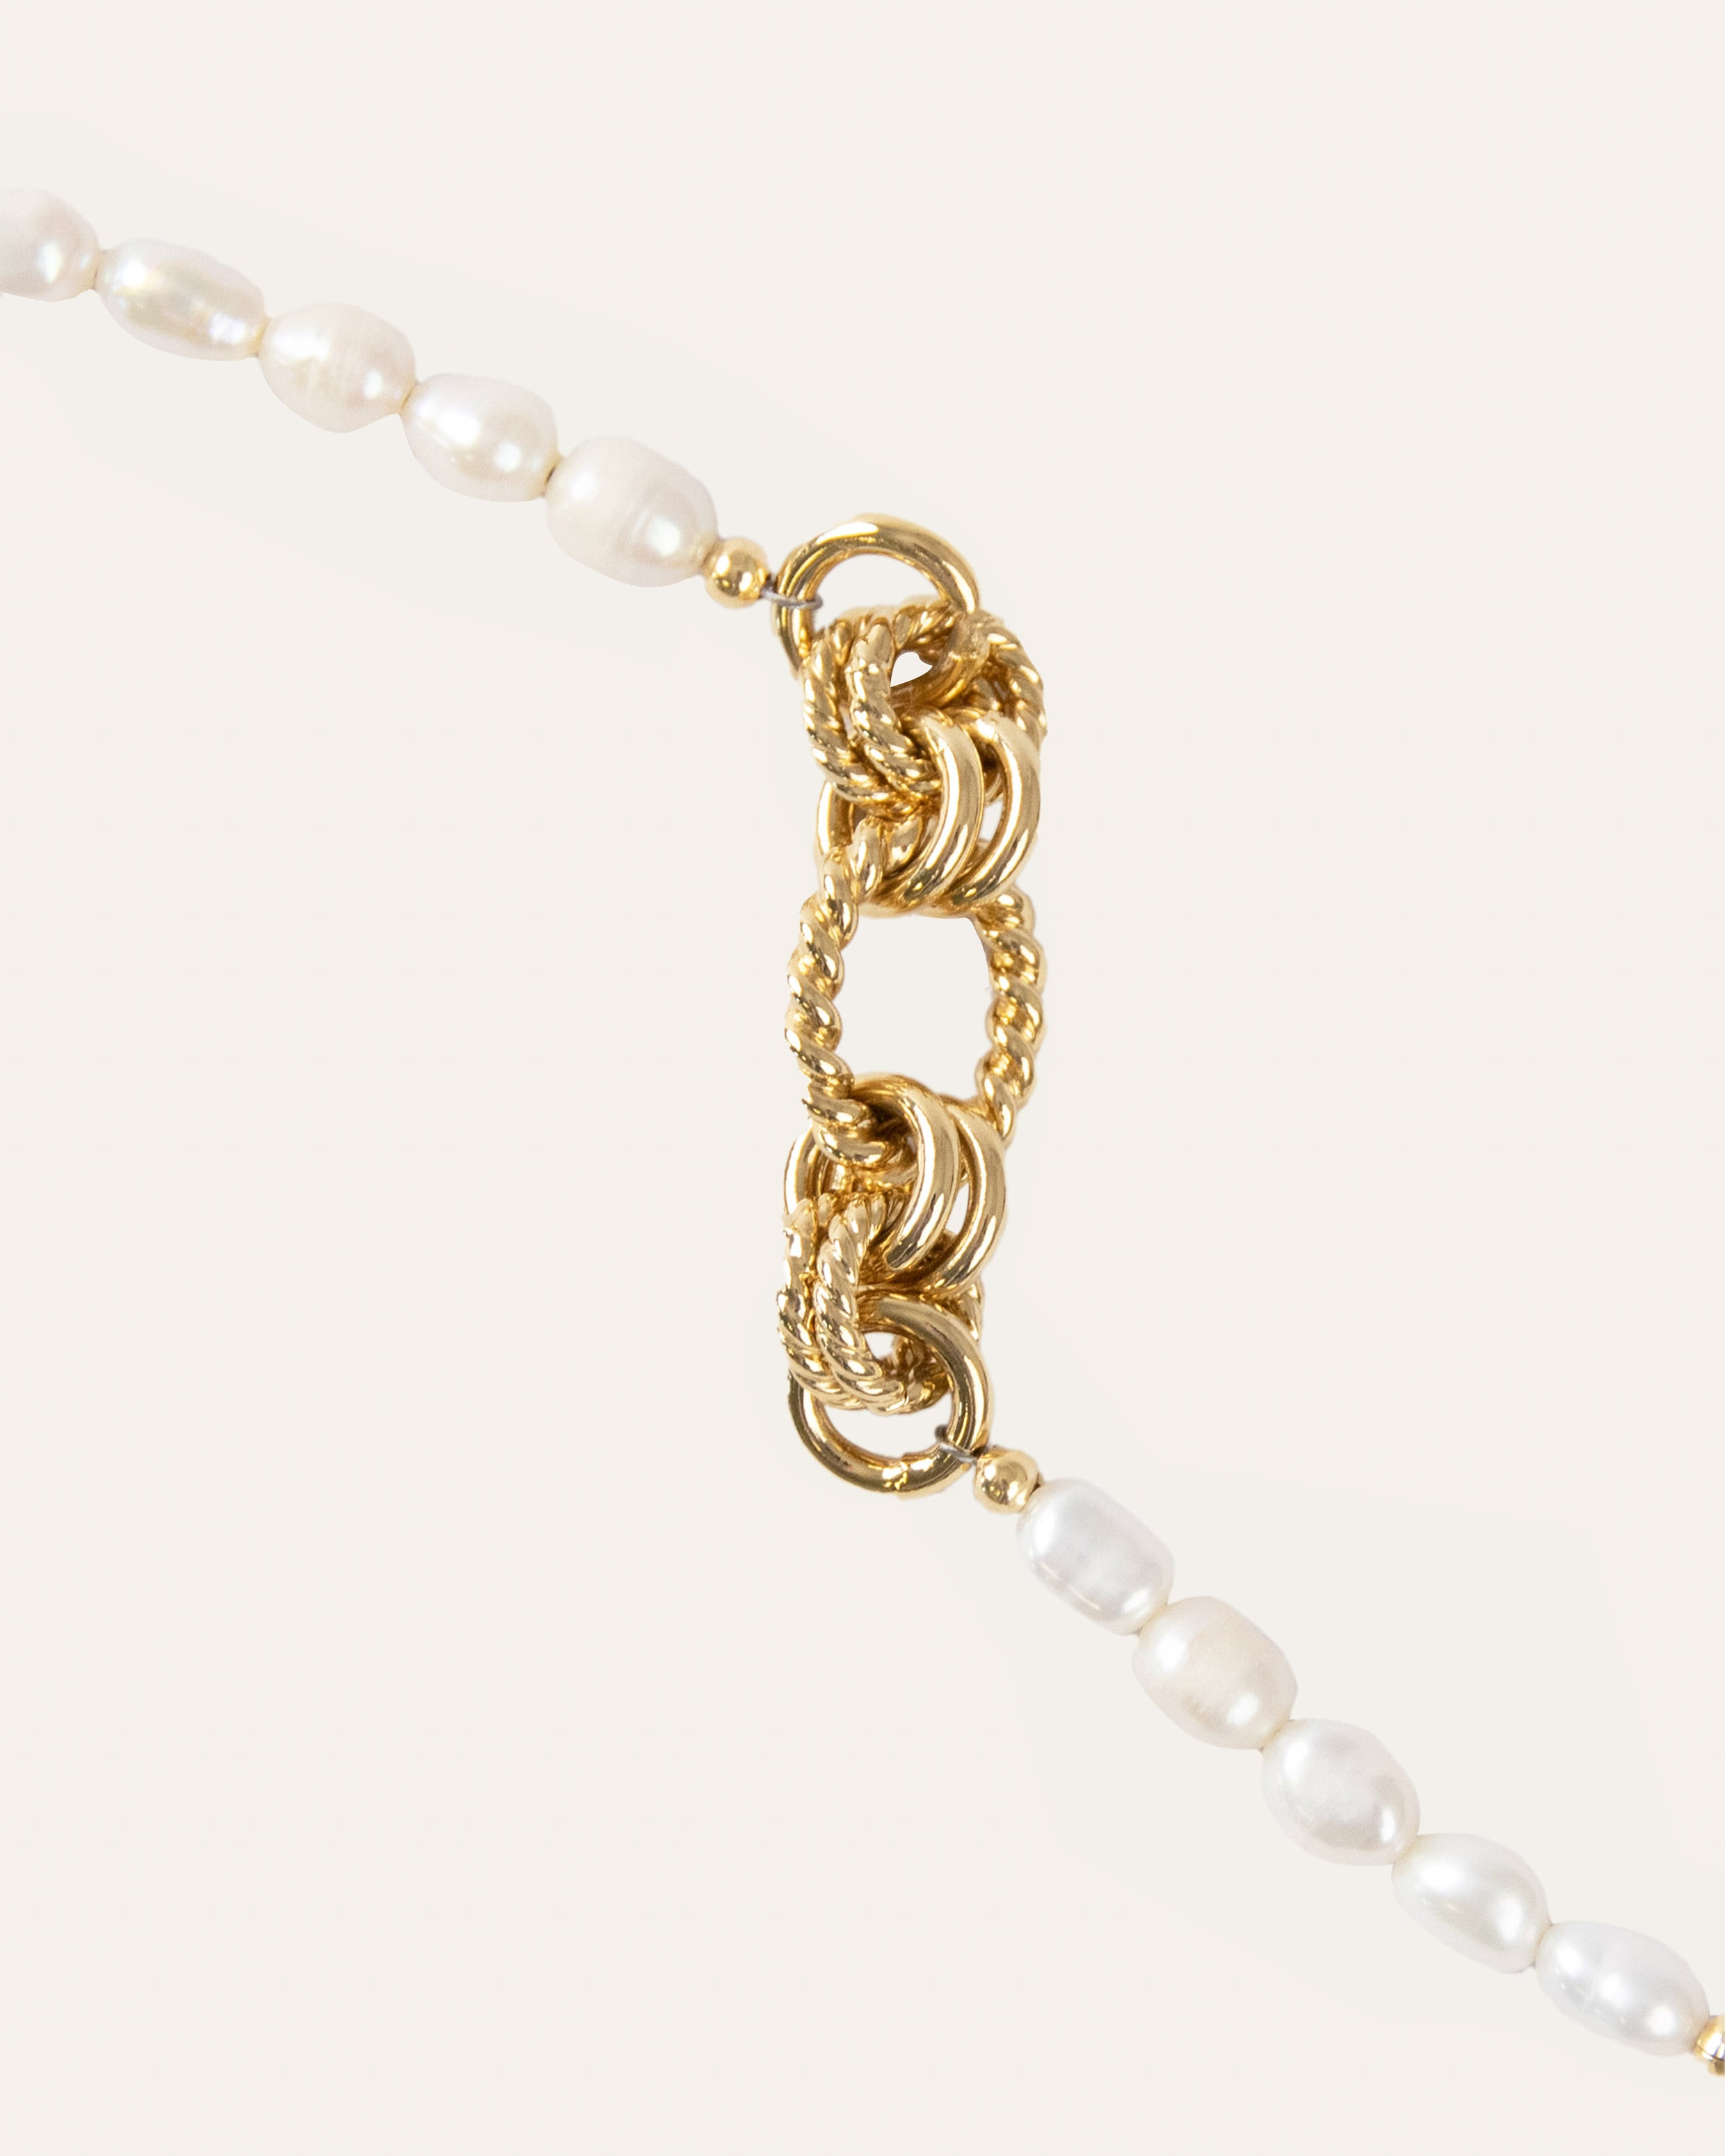 Bracelet orné de perles de culture avec des mailles de différentes tailles rondes et ovales, et différents designs torsadés et lisses, en plaqué or 3 microns 18 carats made in France.